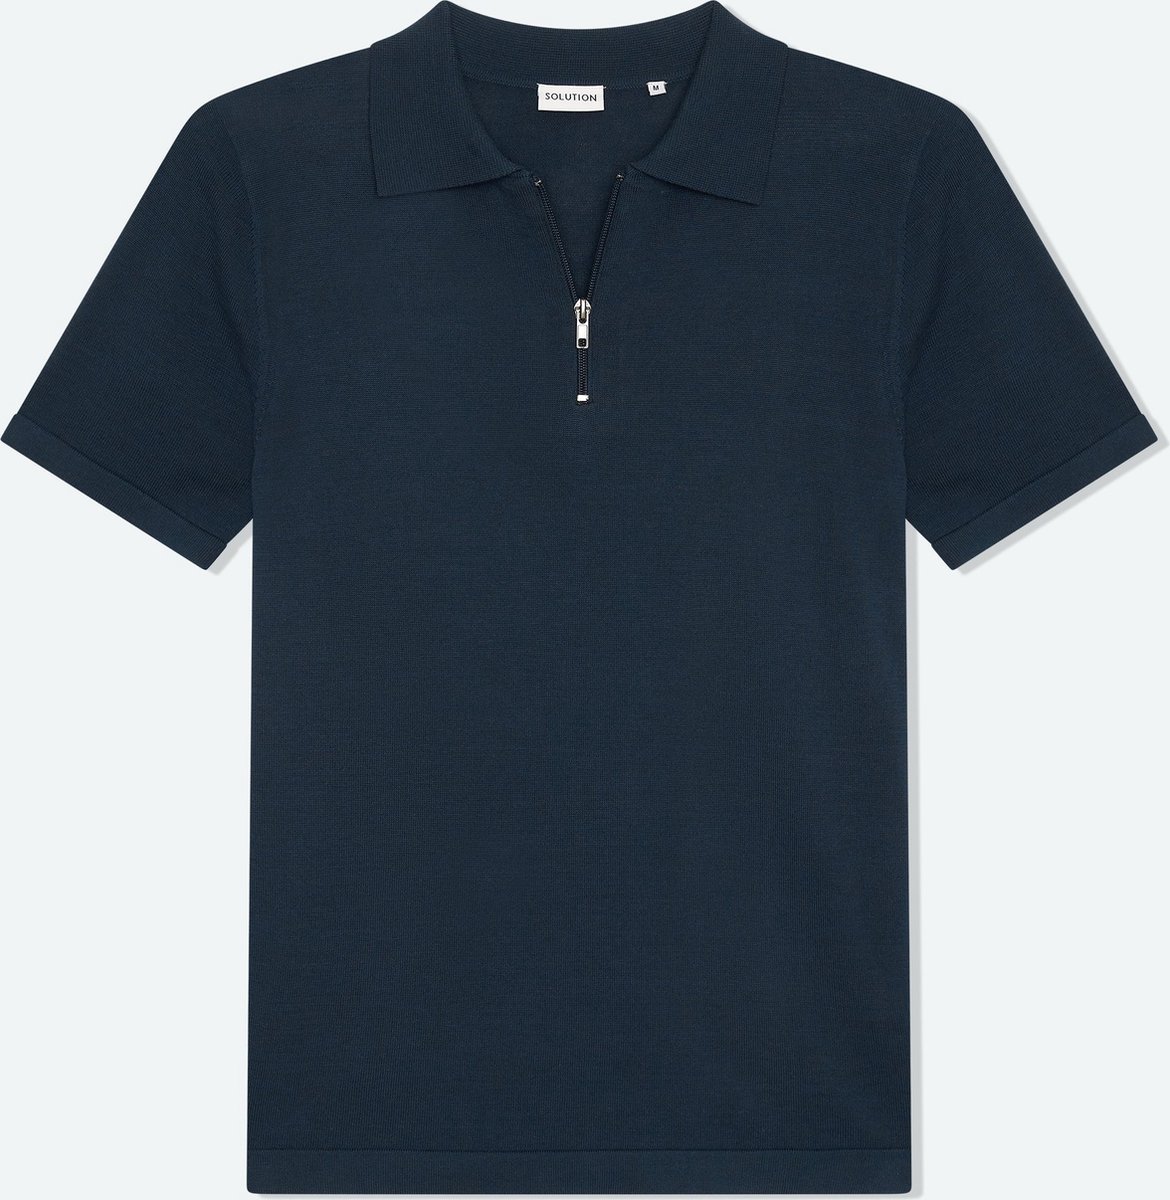 Solution Clothing Zipper - Casual Poloshirt - Regular Fit - Knoopsluiting - Volwassenen - Heren - Mannen - Navy - XL - XL - Solution Clothing